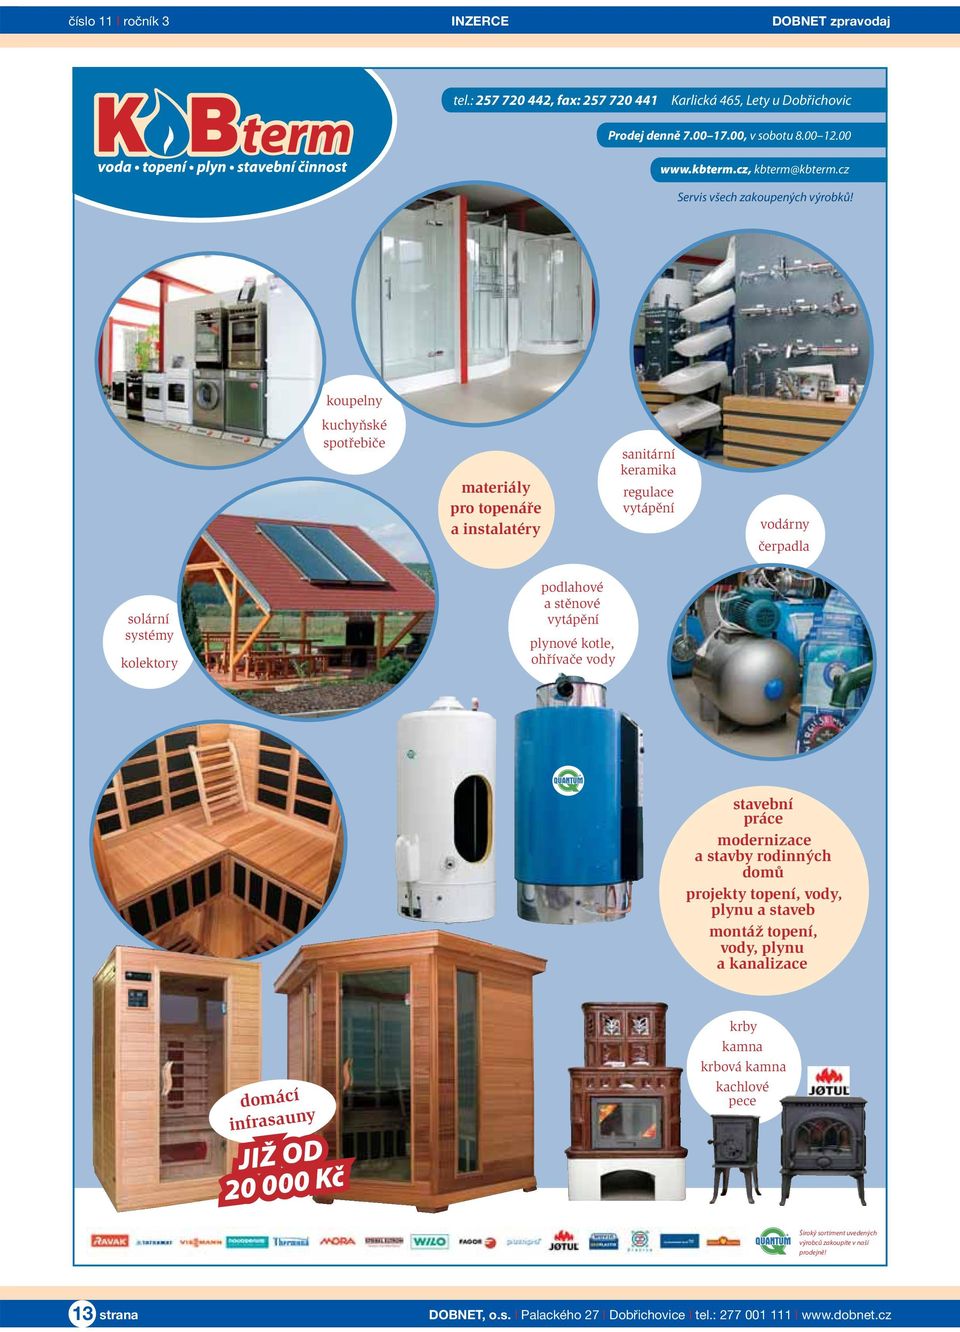 koupelny kuchyňské spotřebiče materiály pro topenáře a instalatéry sanitární keramika regulace vytápění vodárny čerpadla solární systémy kolektory podlahové a stěnové vytápění